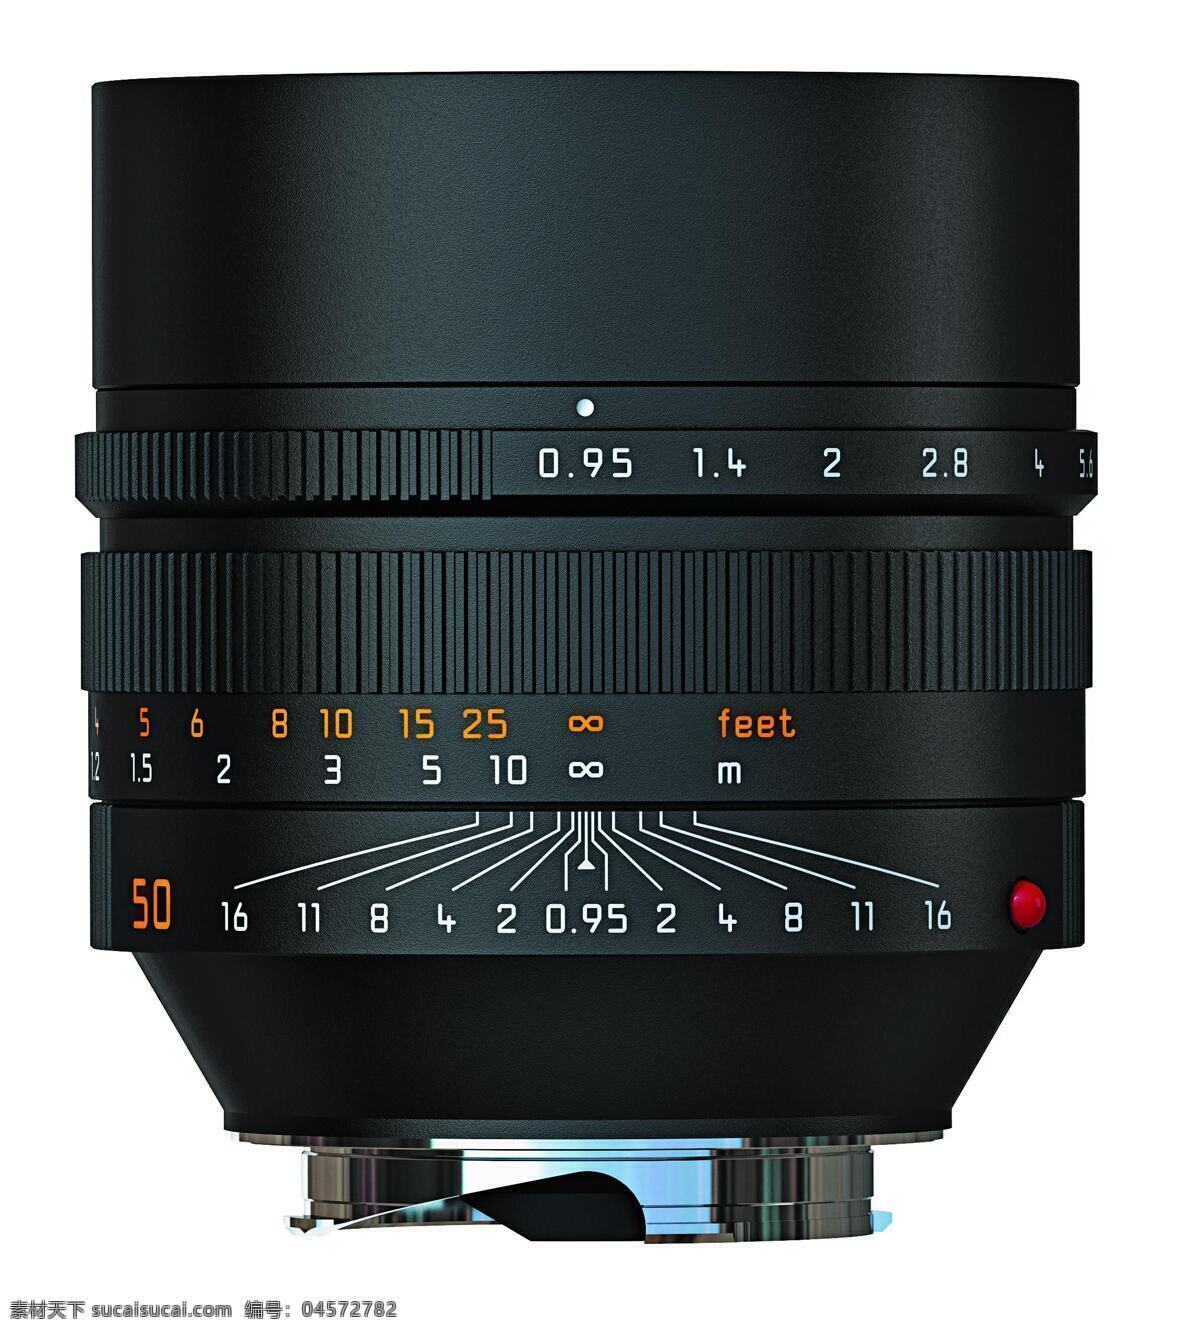 单反相机 电脑网络 镜头 生活百科 数码相机 长焦镜头 相机配件 广角镜头 专业相机